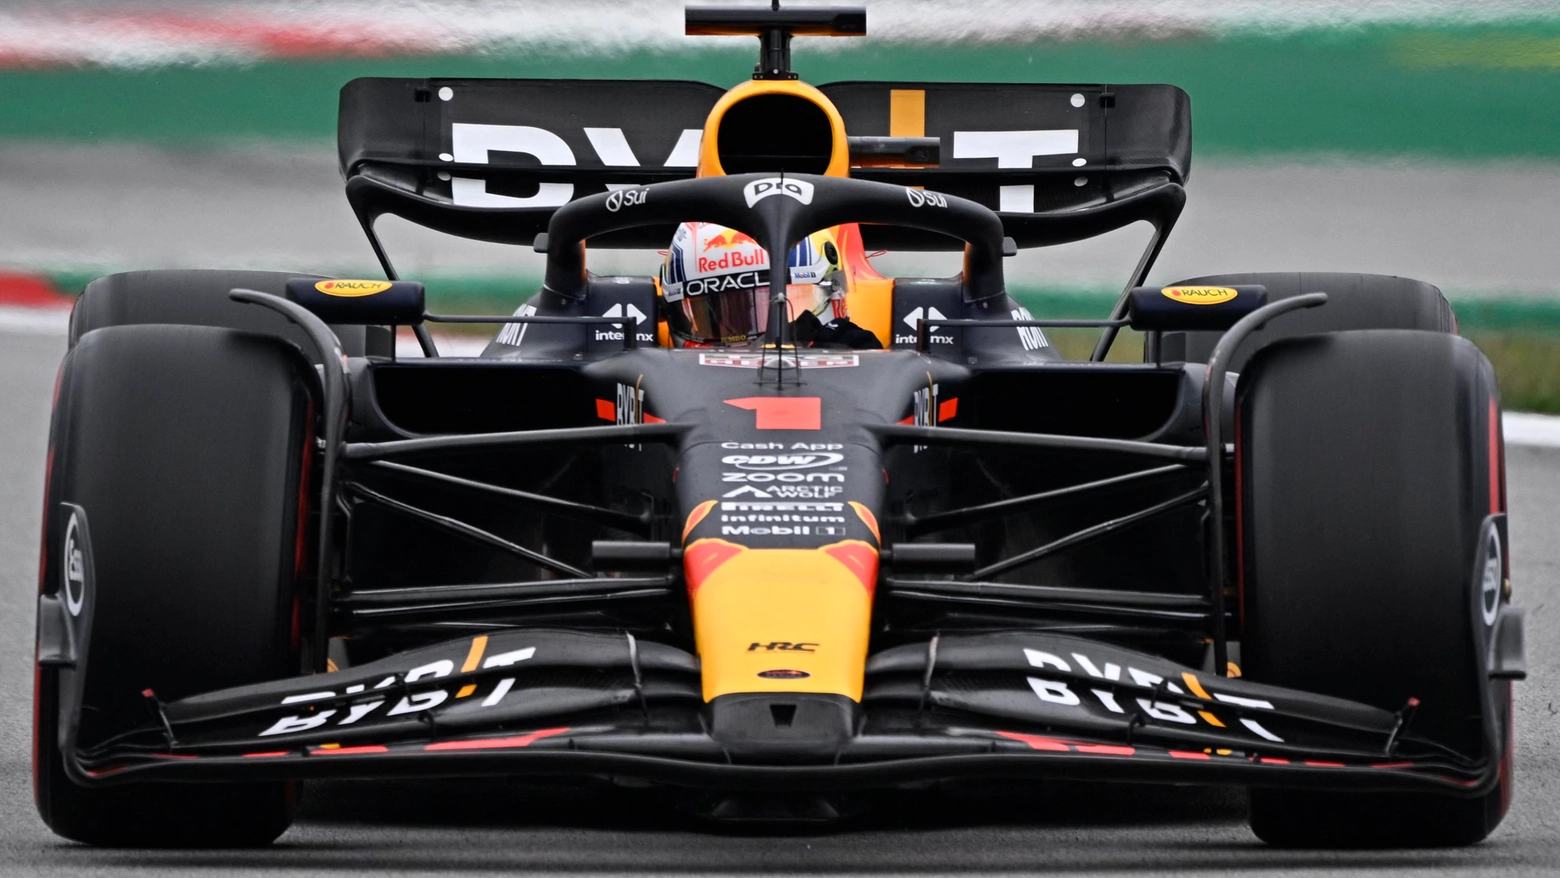 F1 Gp di Spagna, Verstappen in pole. Sainz secondo, Leclerc 19esimo. La griglia di partenza